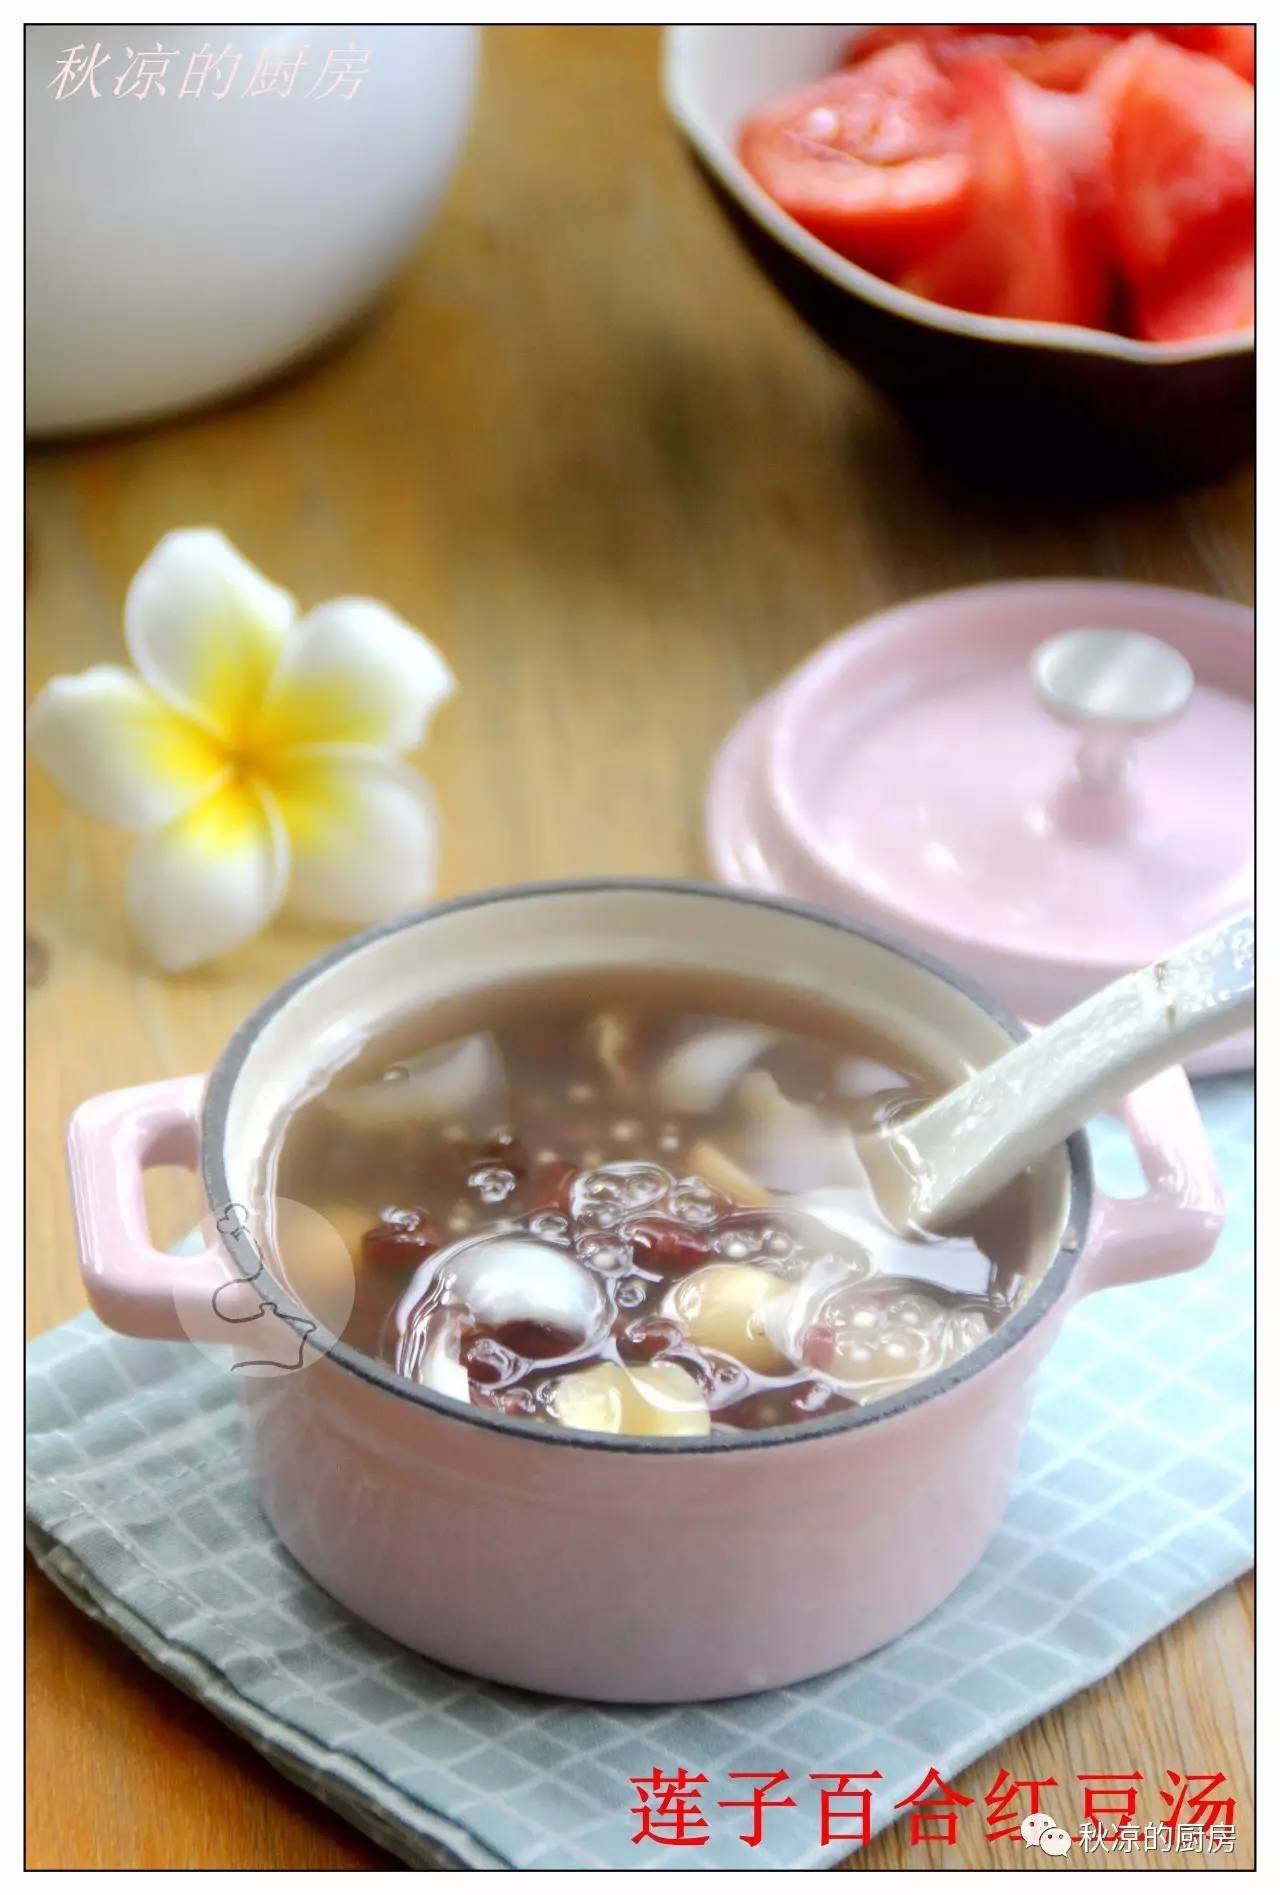 莲子百合红豆汤自己做消夏解暑的糖水